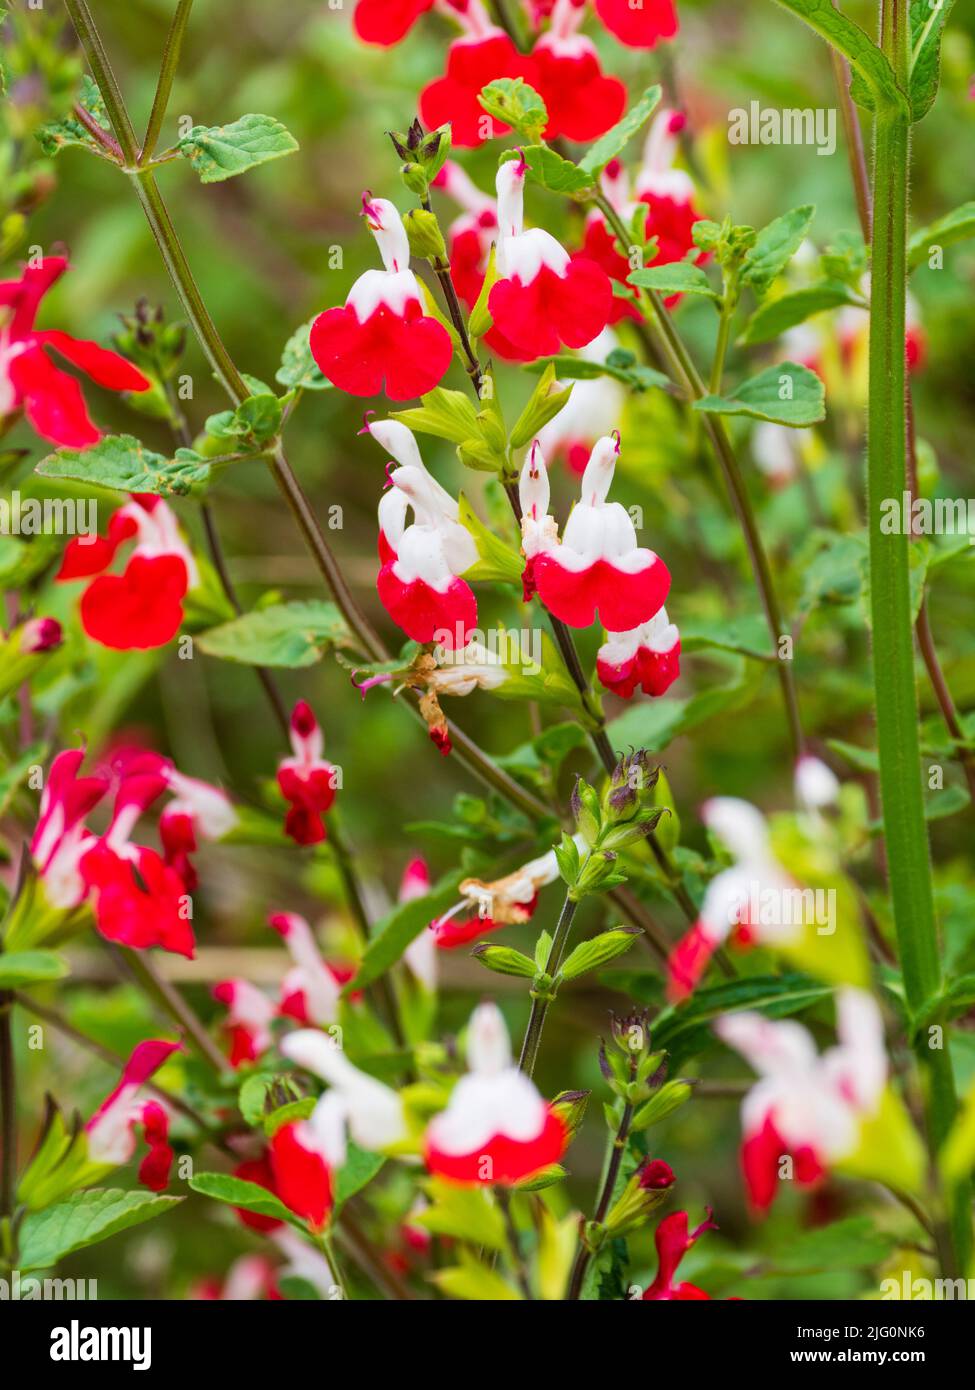 Frei blühender halbharter Salbei-Strauch, Salvia Microphylla 'Hot Lips' mit roten und weißen zweifarbigen Blüten Stockfoto